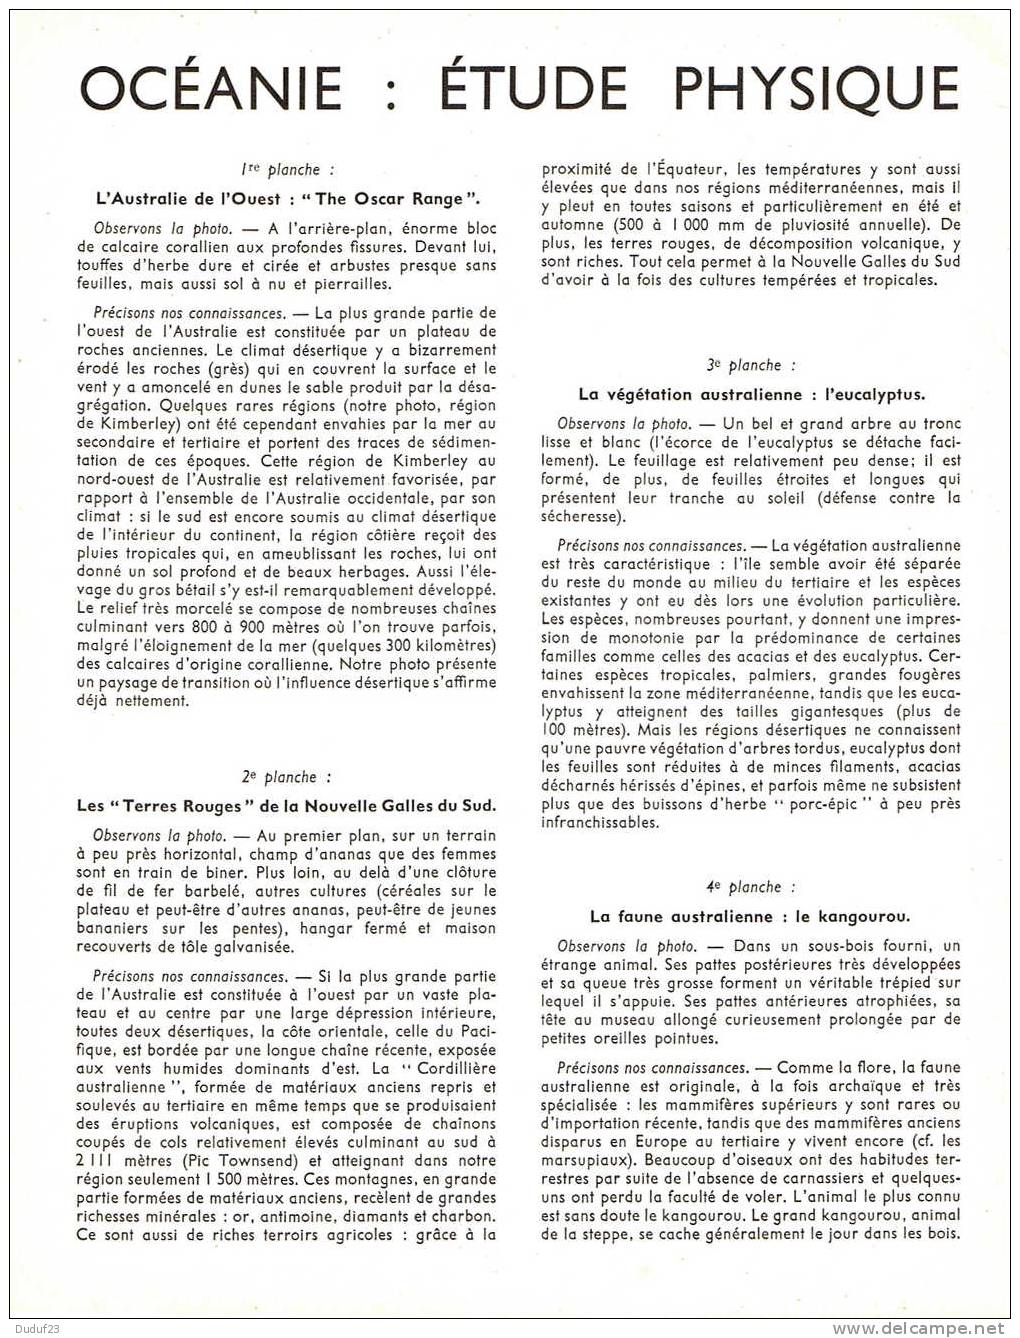 OCEANIE ETUDE PHYSIQUE - DOCUMENTATION PEDAGOGIQUE ROSSIGNOL MONTMORILLON 1956 - Lesekarten